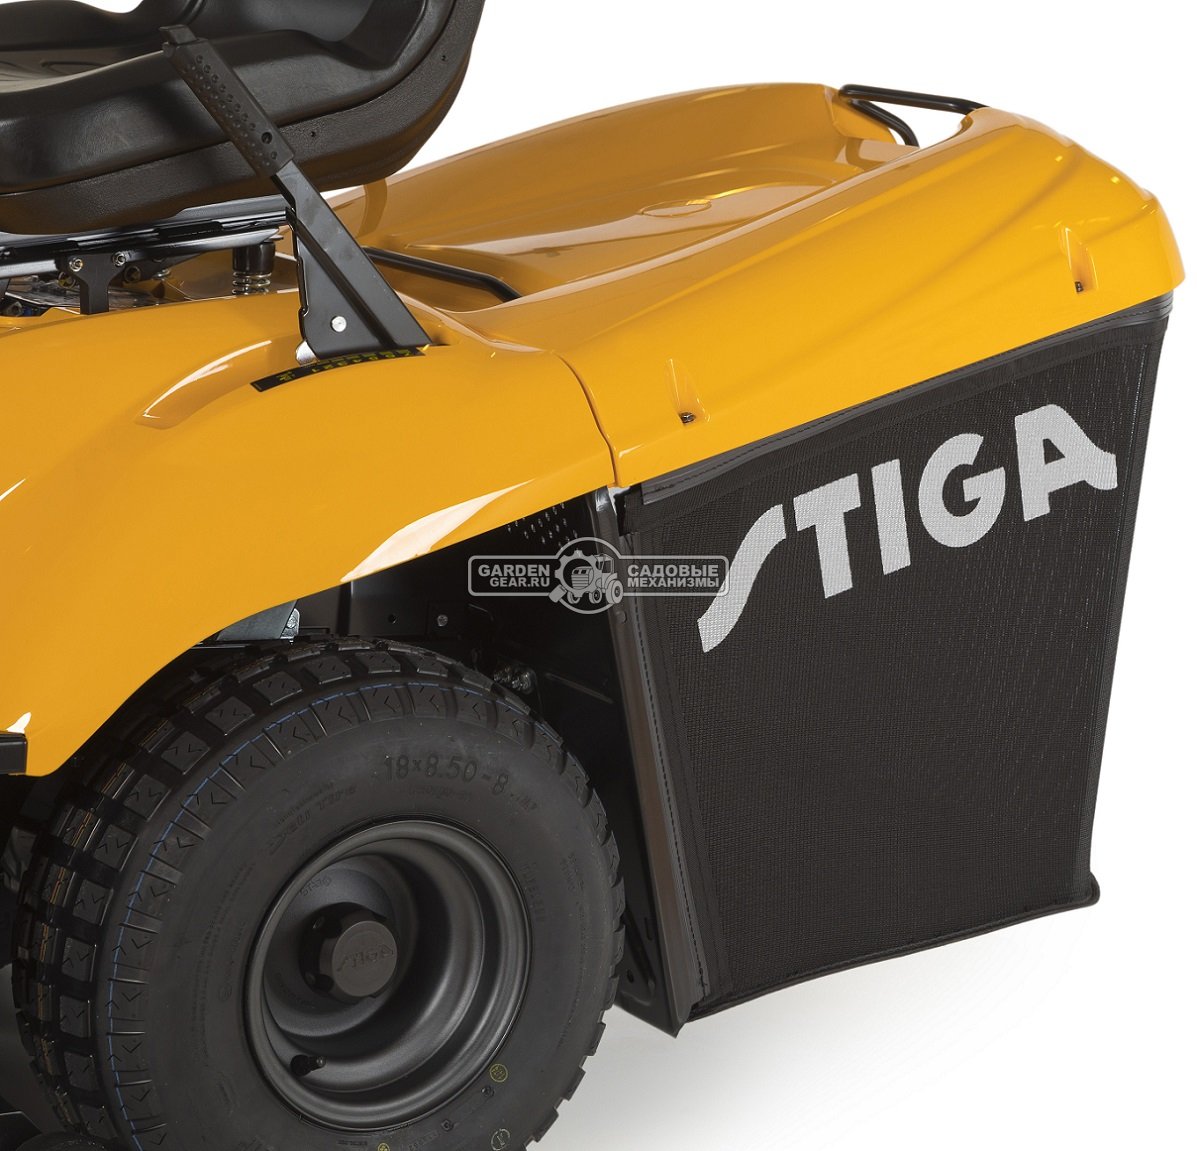 Садовый трактор Stiga Estate 6102 HW2 (ITA, Stiga ST650, 635 куб.см., гидростатика, травосборник 300 л., ширина кошения 102 см, TC 102/122, 235 кг.)